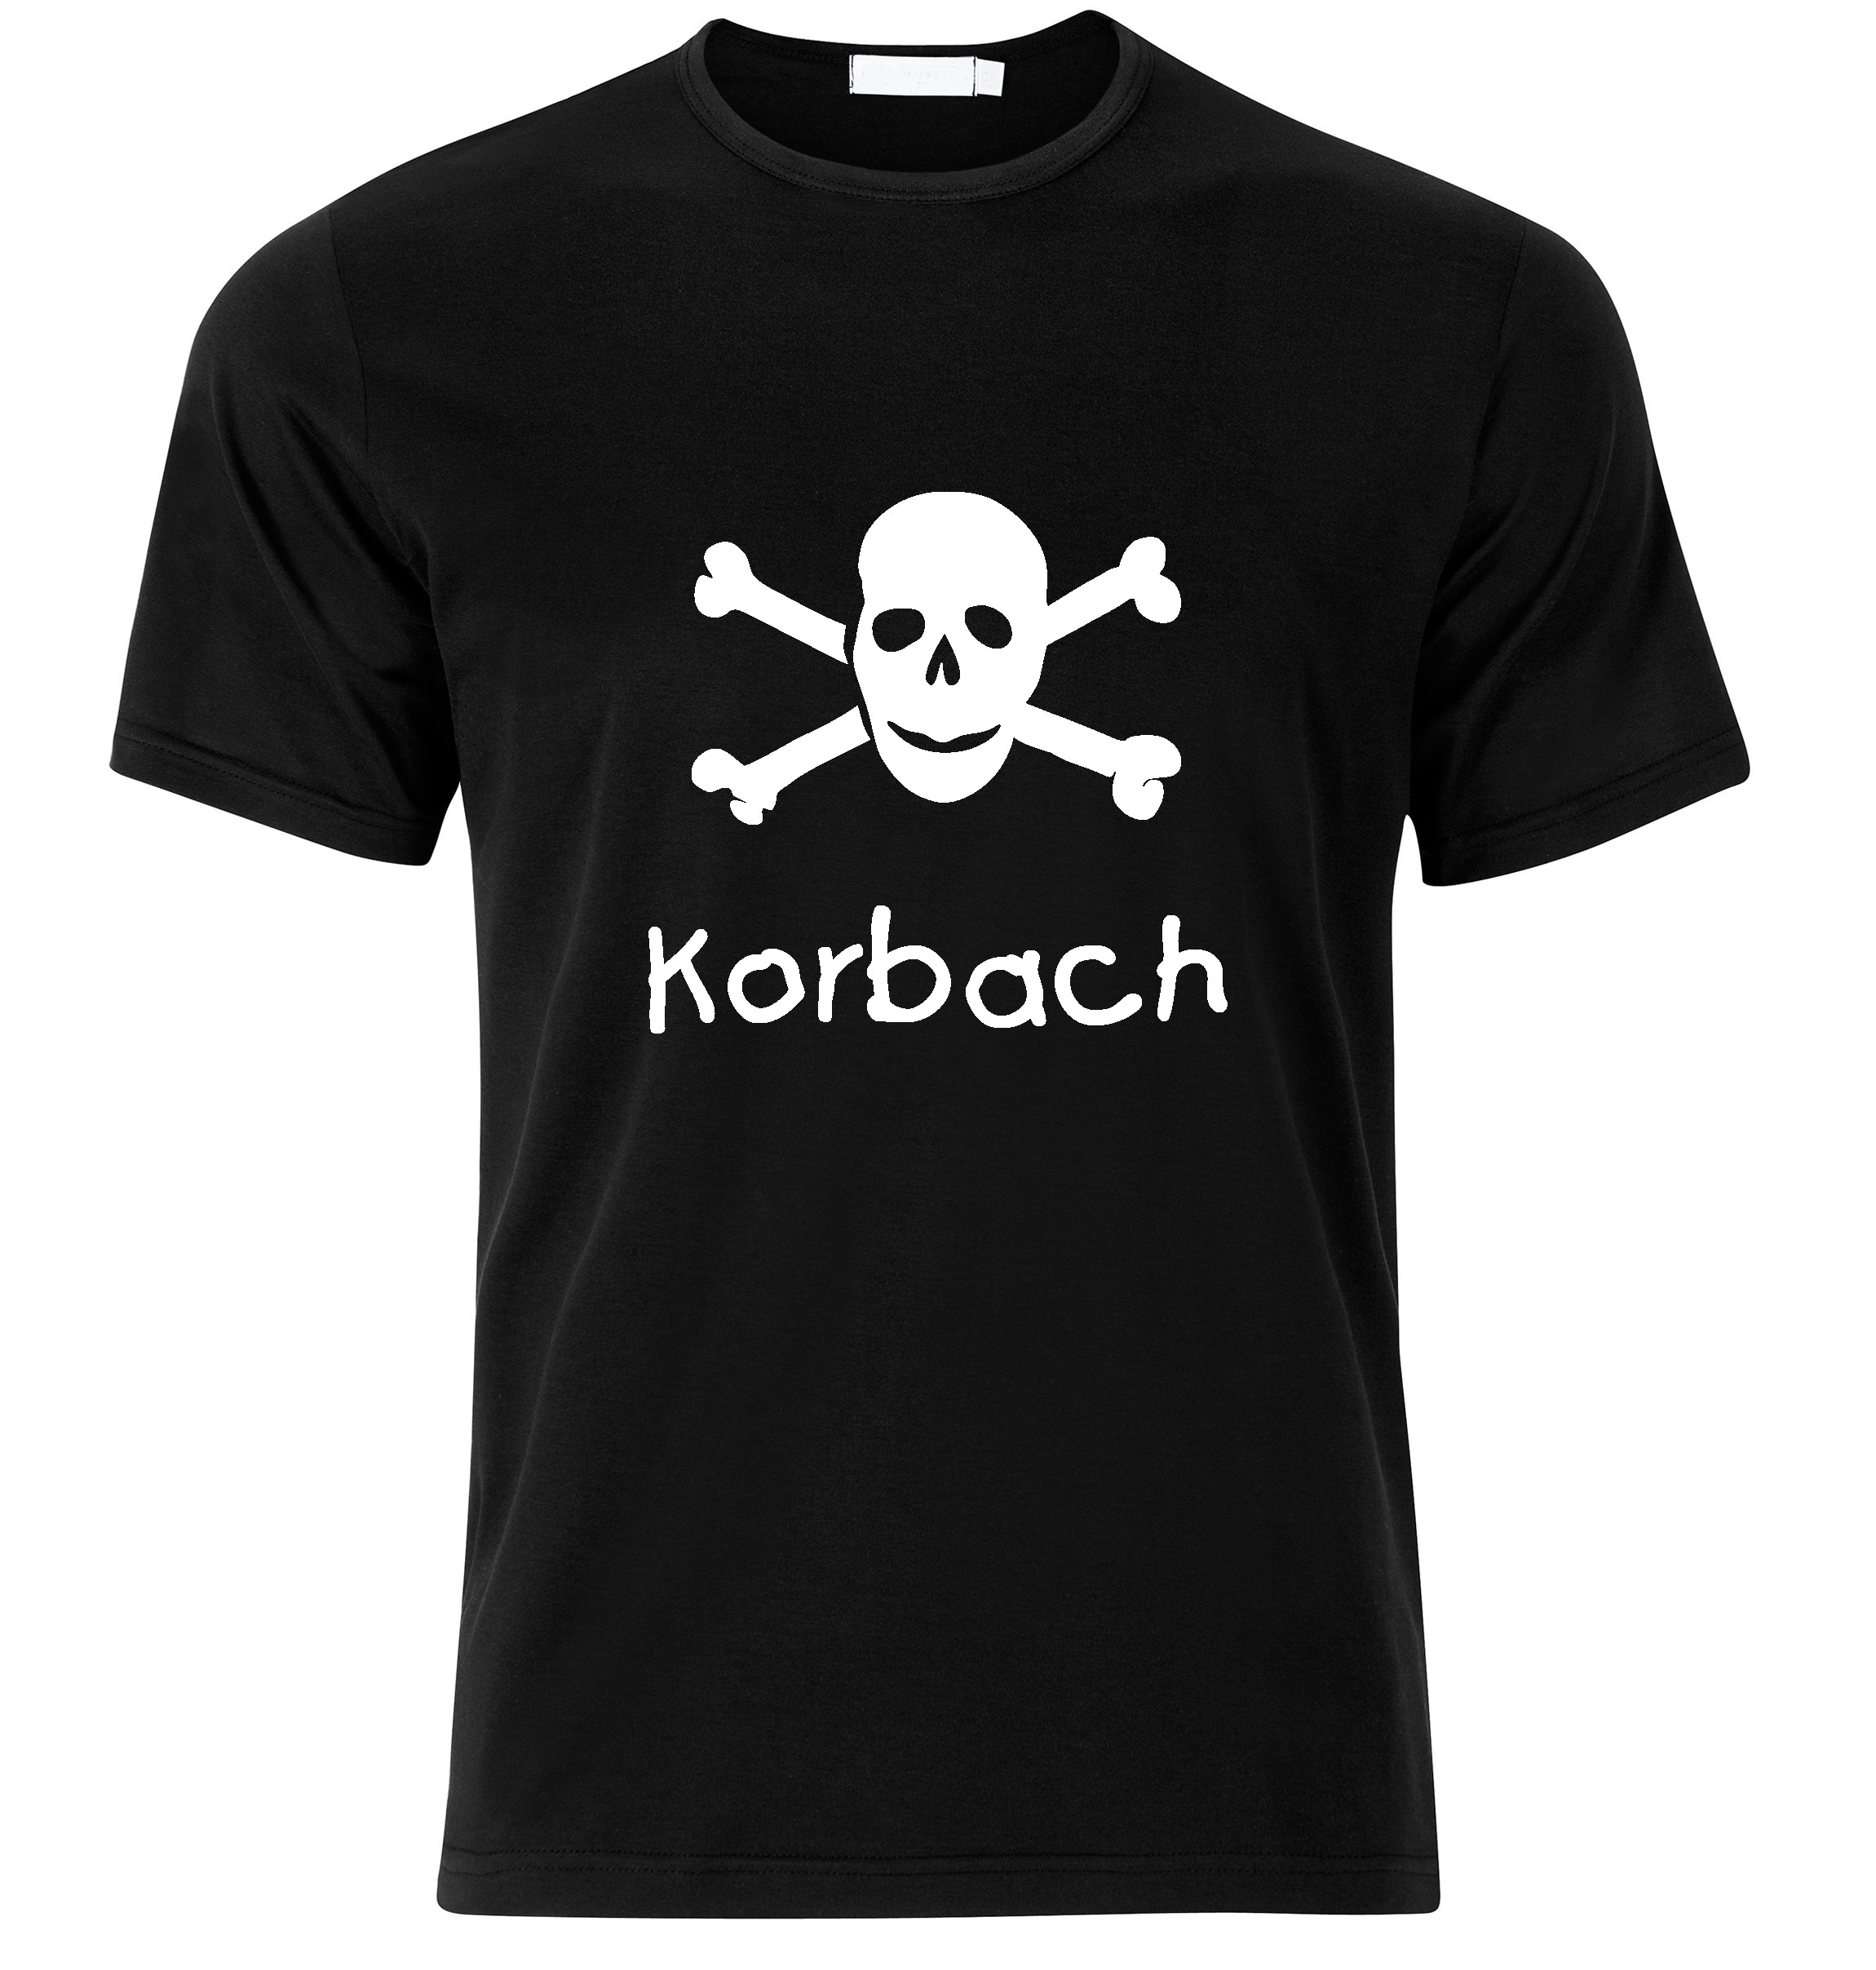 T-Shirt Korbach Jolly Roger, Totenkopf